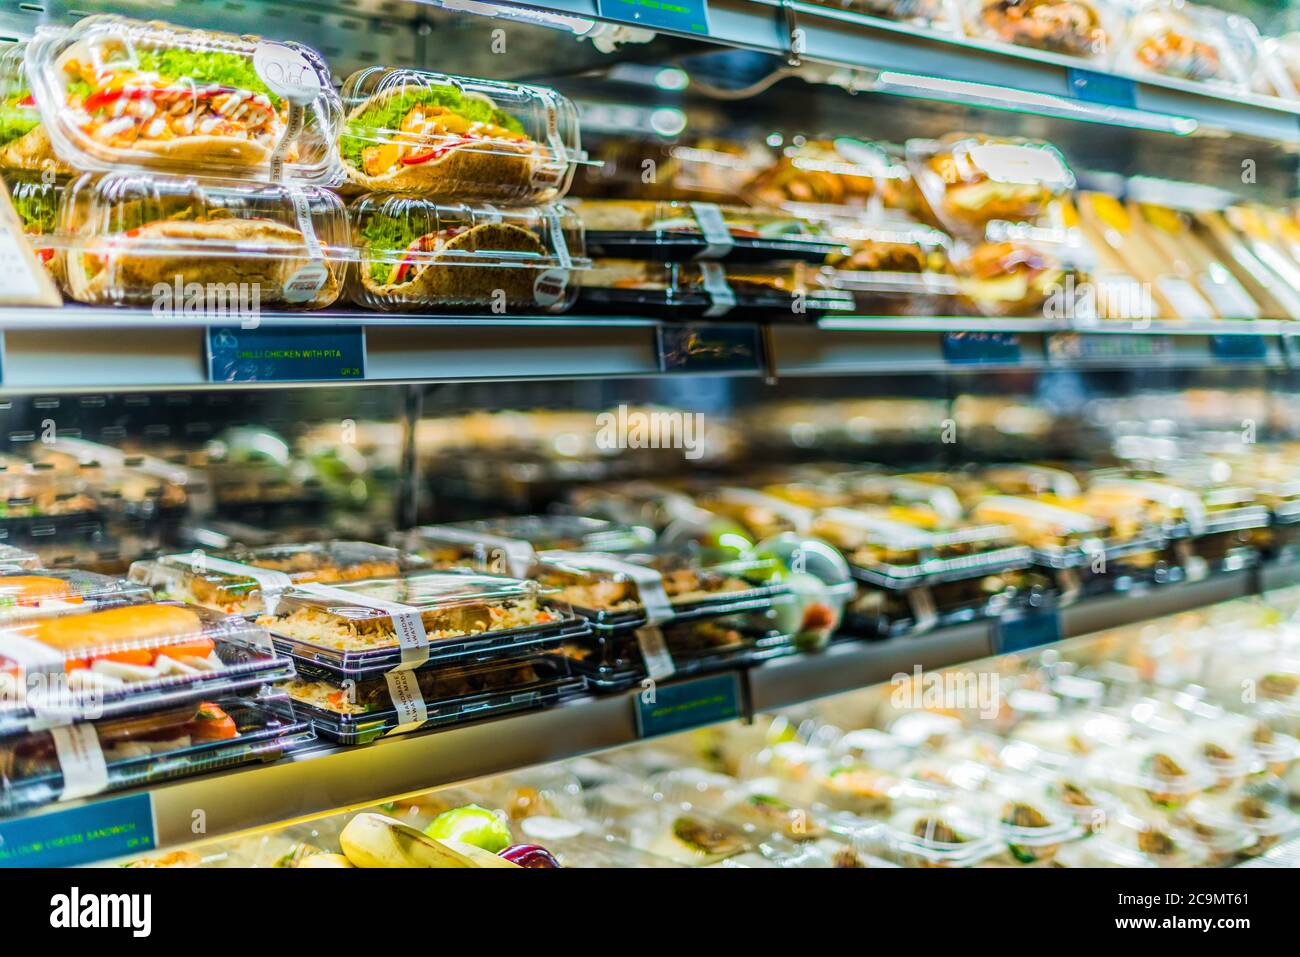 DOHA, KATAR - 28. FEB 2020: Vorgepackte Sandwiches, Salate und Getränke in einem handelsüblichen Kühlschrank Stockfoto